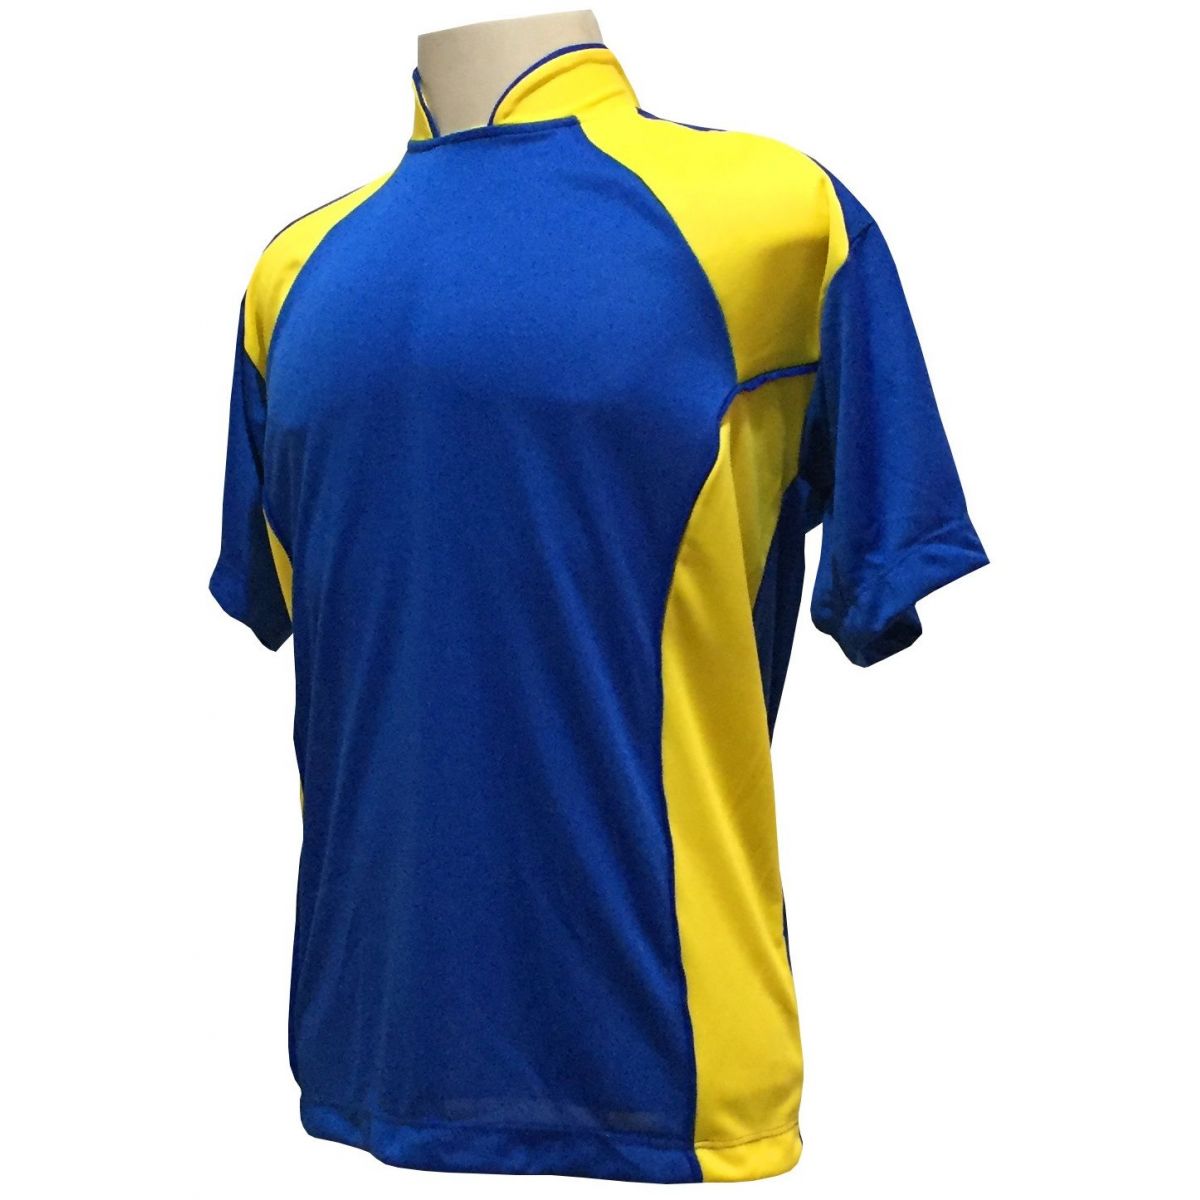 Uniforme Esportivo Completo modelo Suécia 14+1 (14 camisas Royal/Amarelo + 14 calções Madrid Amarelo + 14 pares de meiões Amarelo + 1 conjunto de goleiro) + Brindes